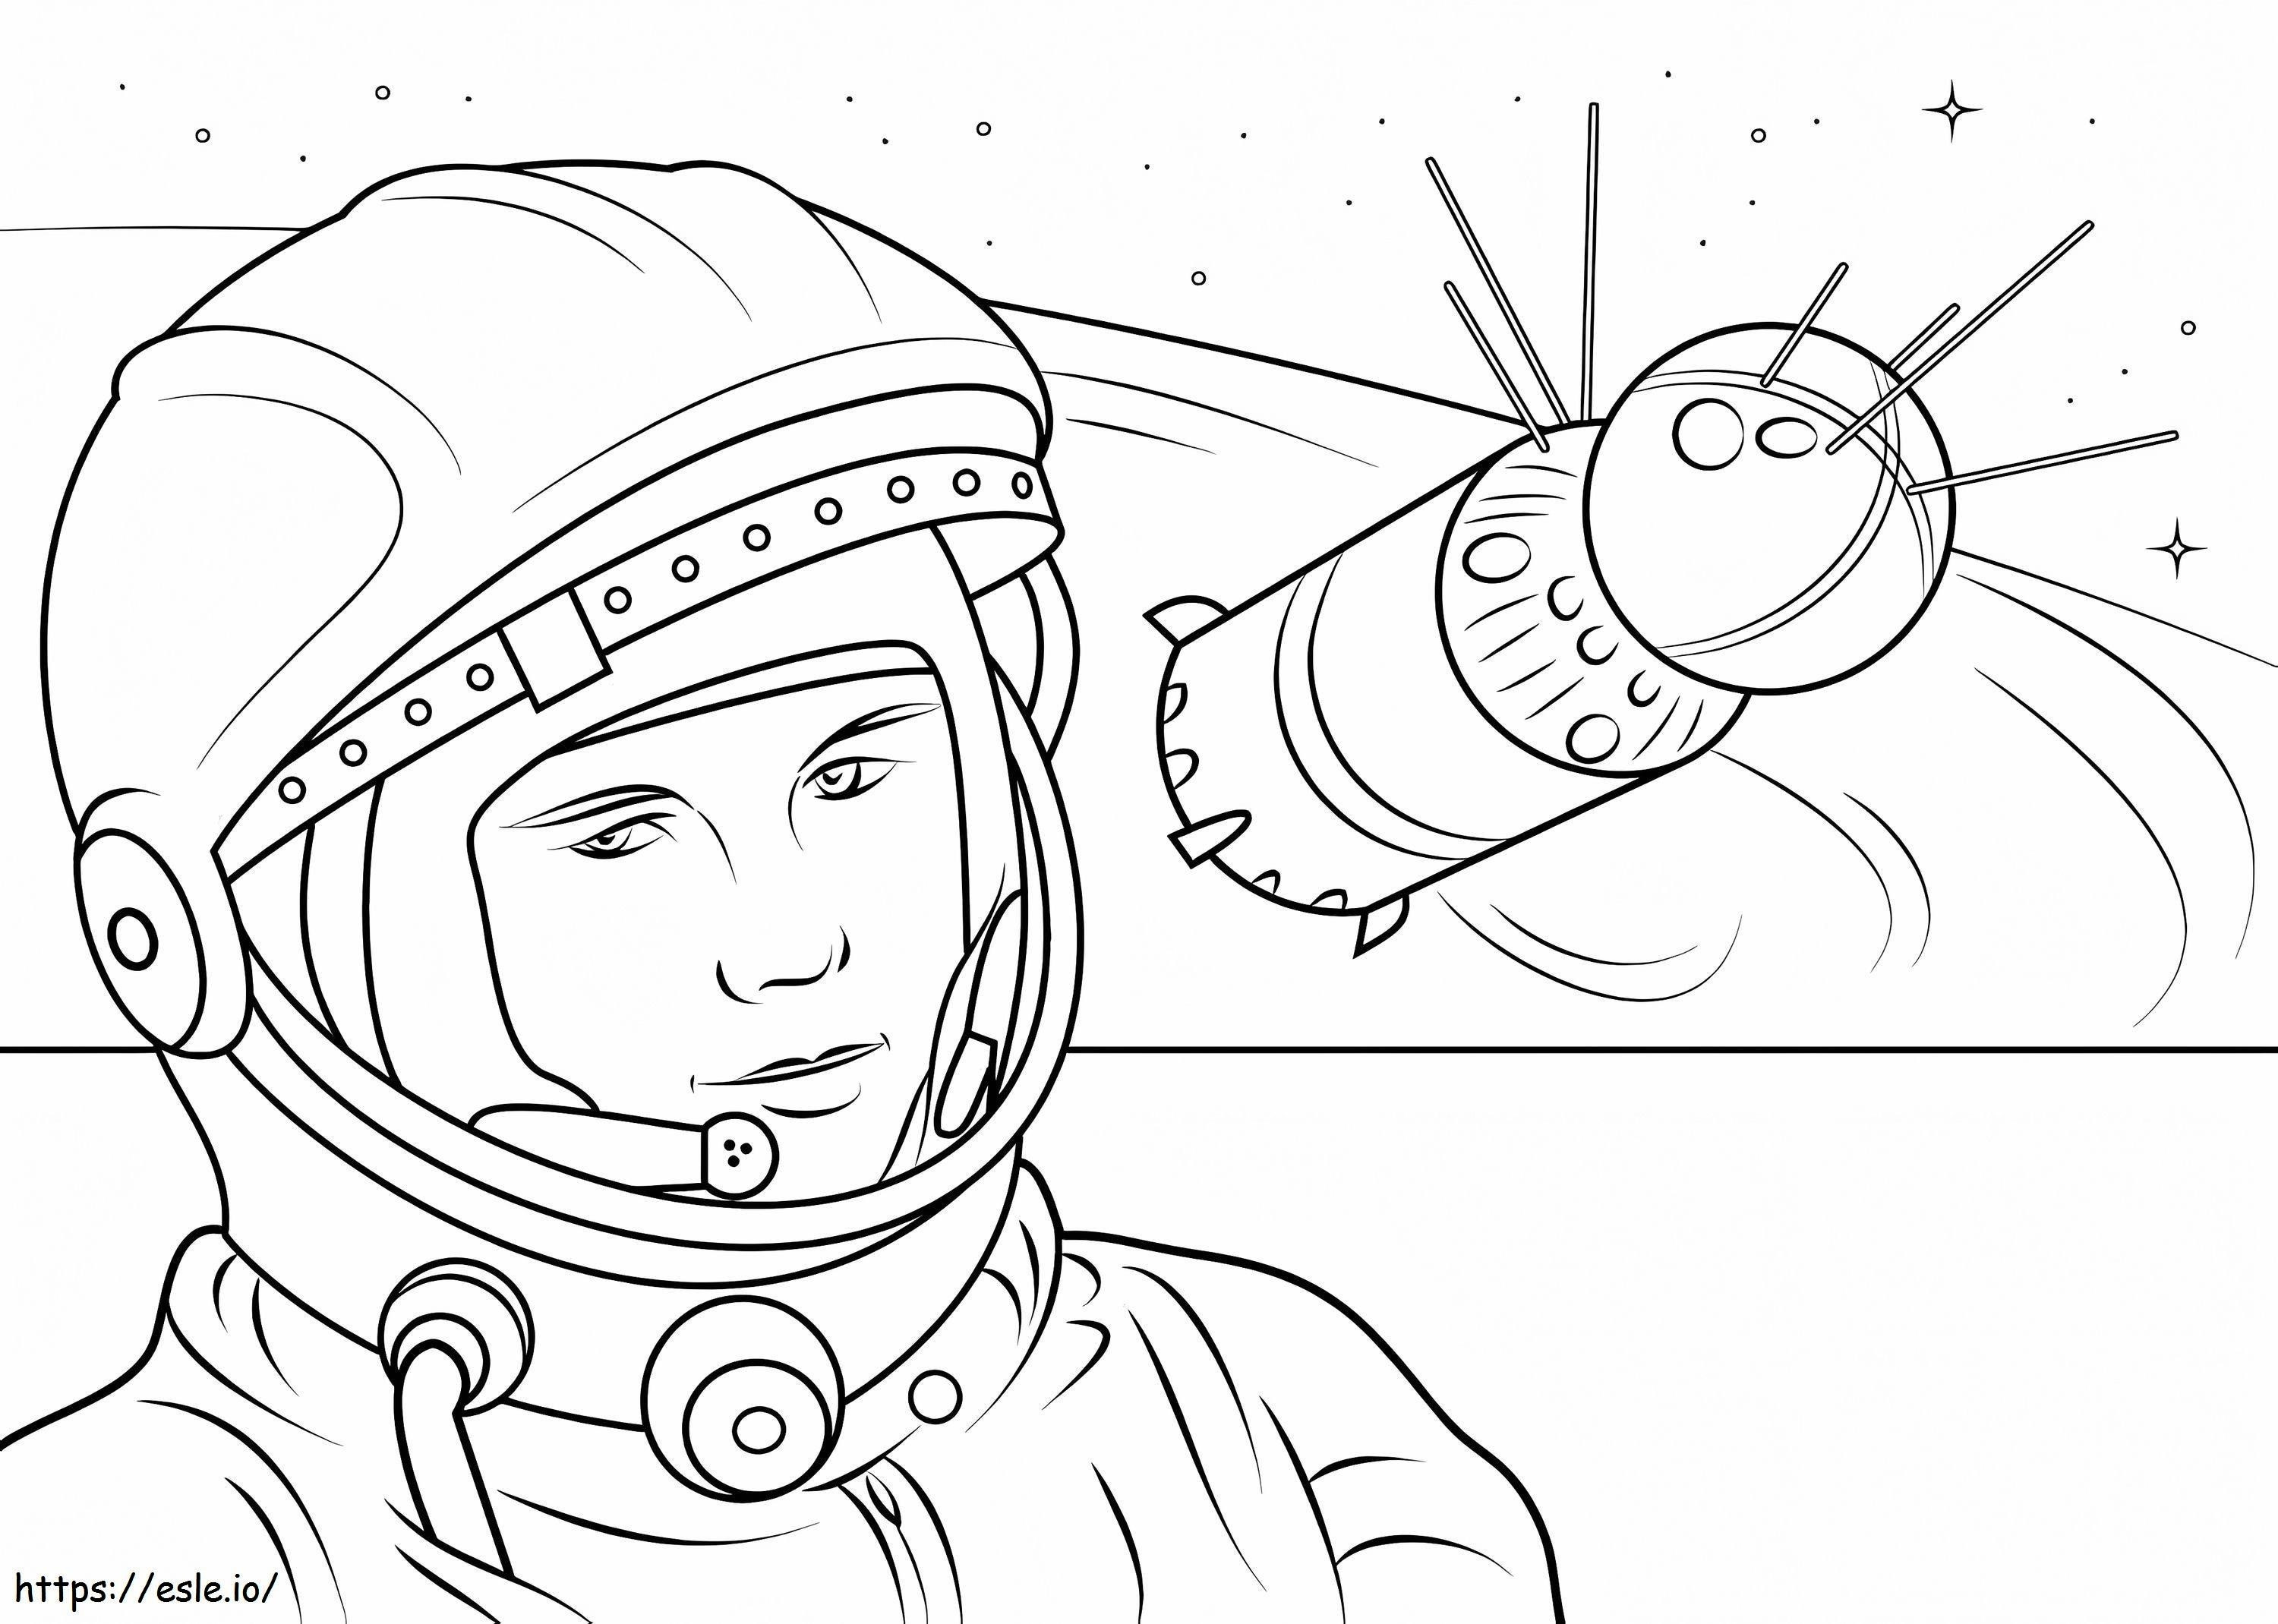 Yuri Gagarin coloring page